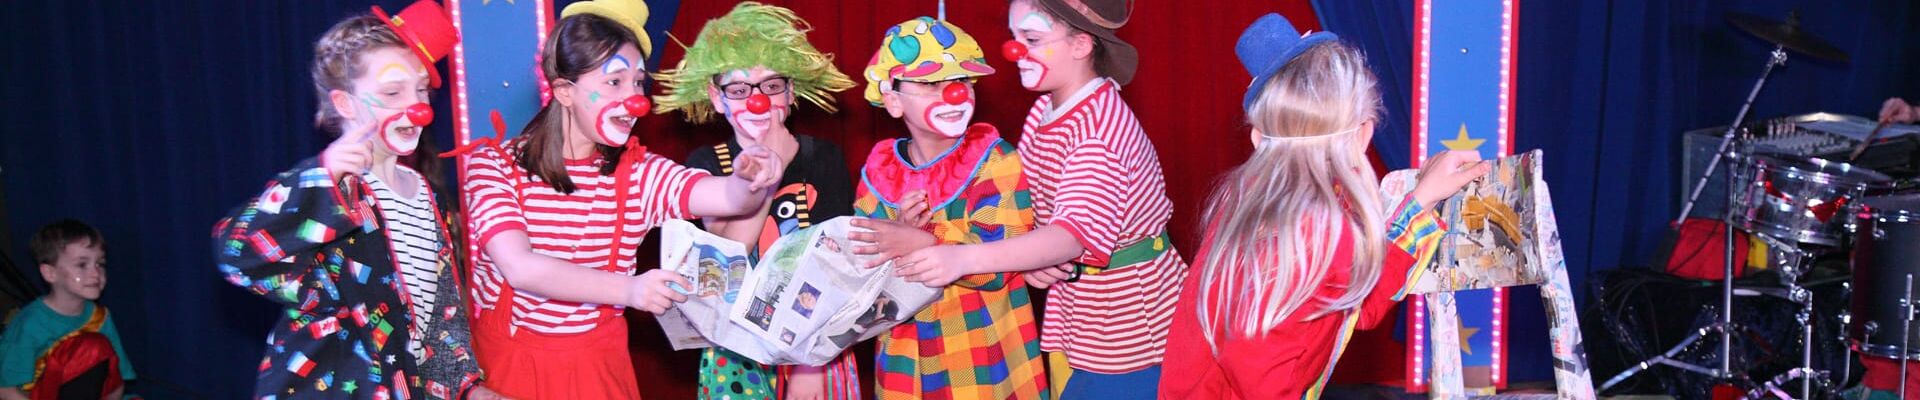 kostümierte Jugendliche beim Clownsspiel in der Manege